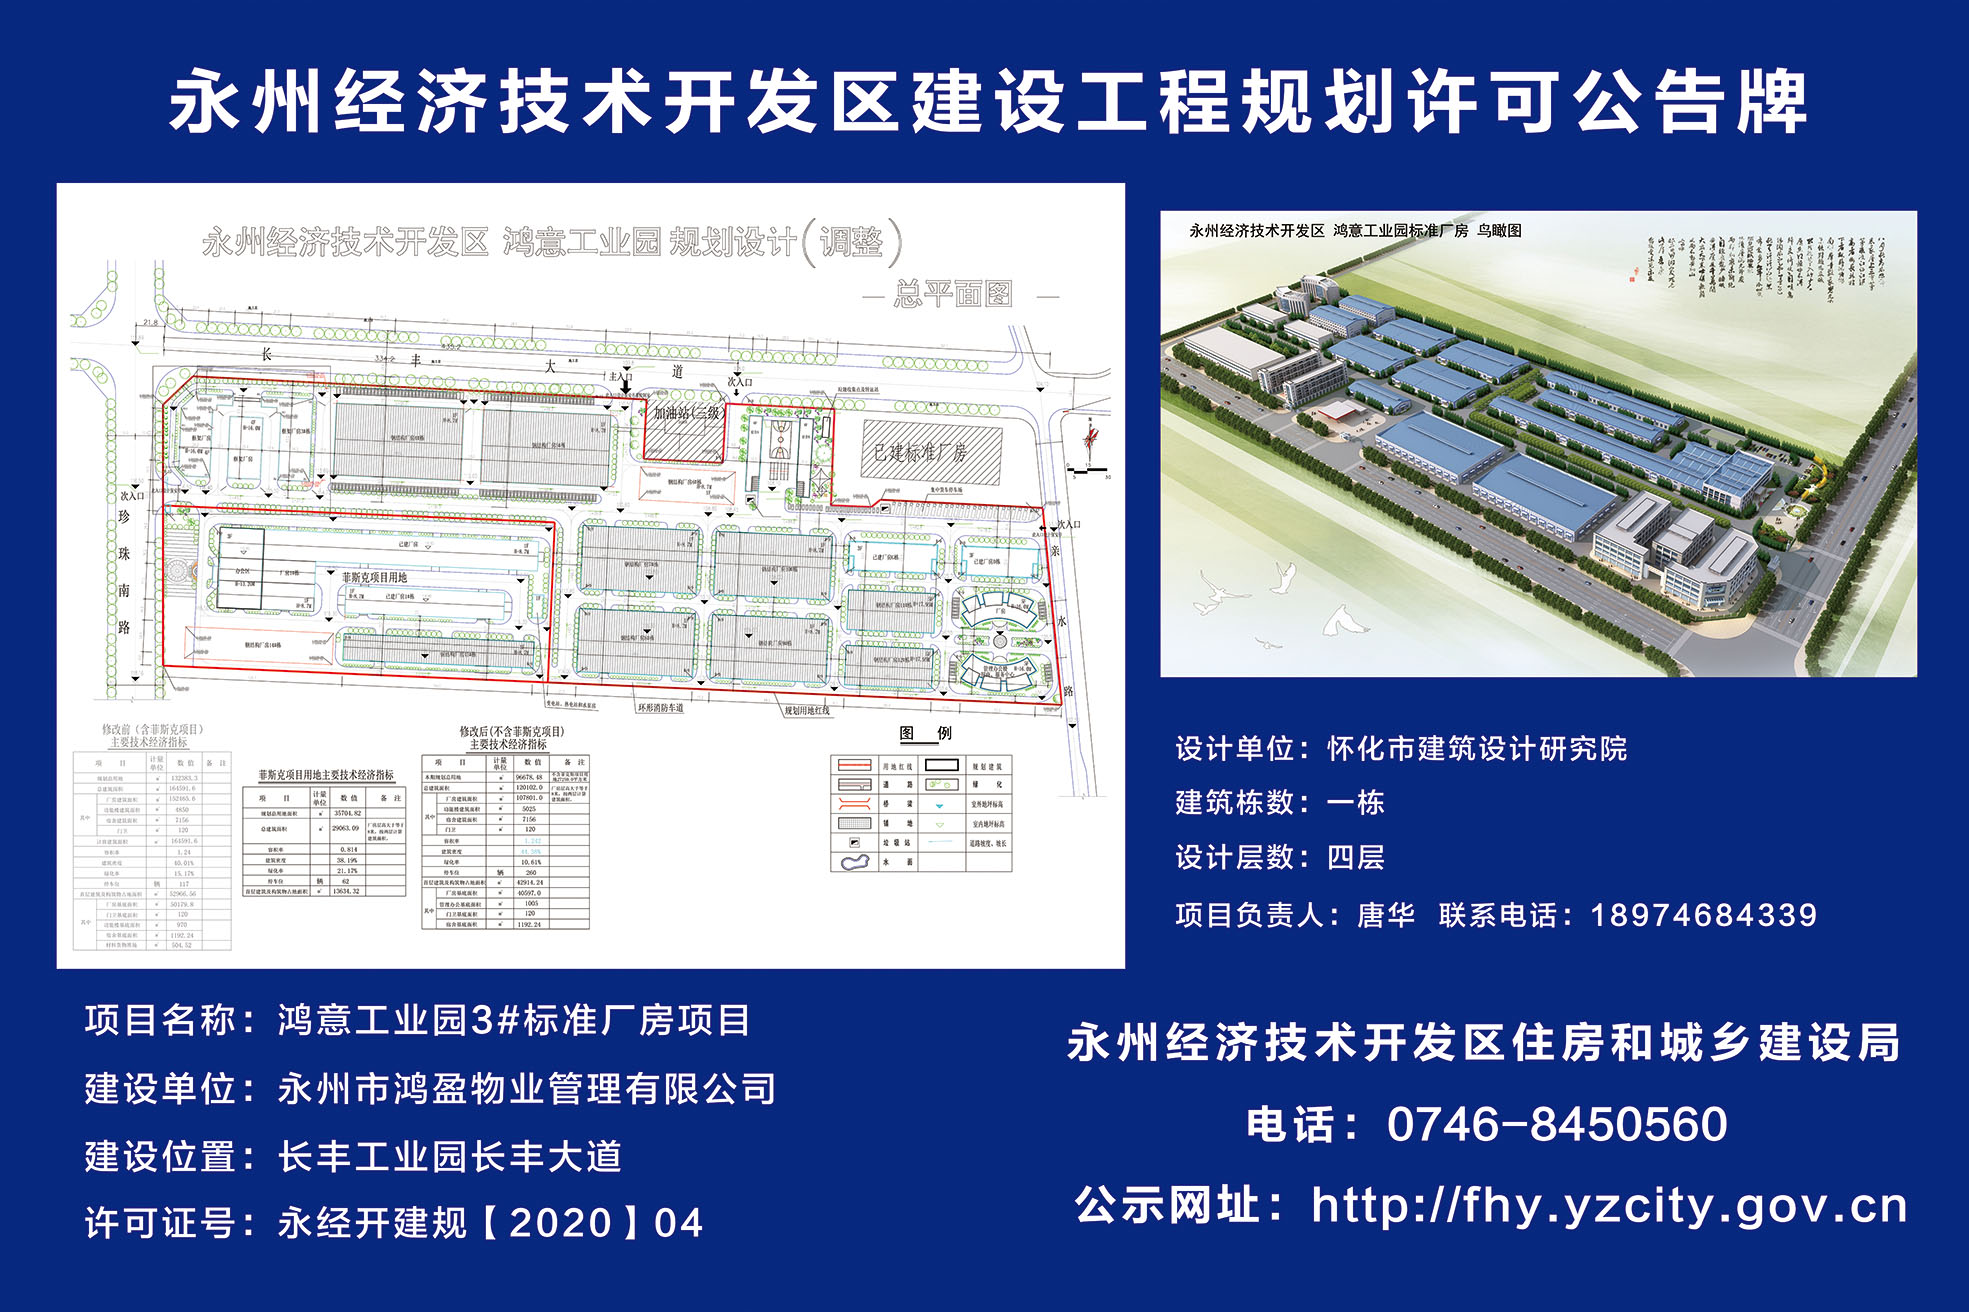 永州经开区建设工程规划许可公告牌:鸿意工业园规划设计(调整)